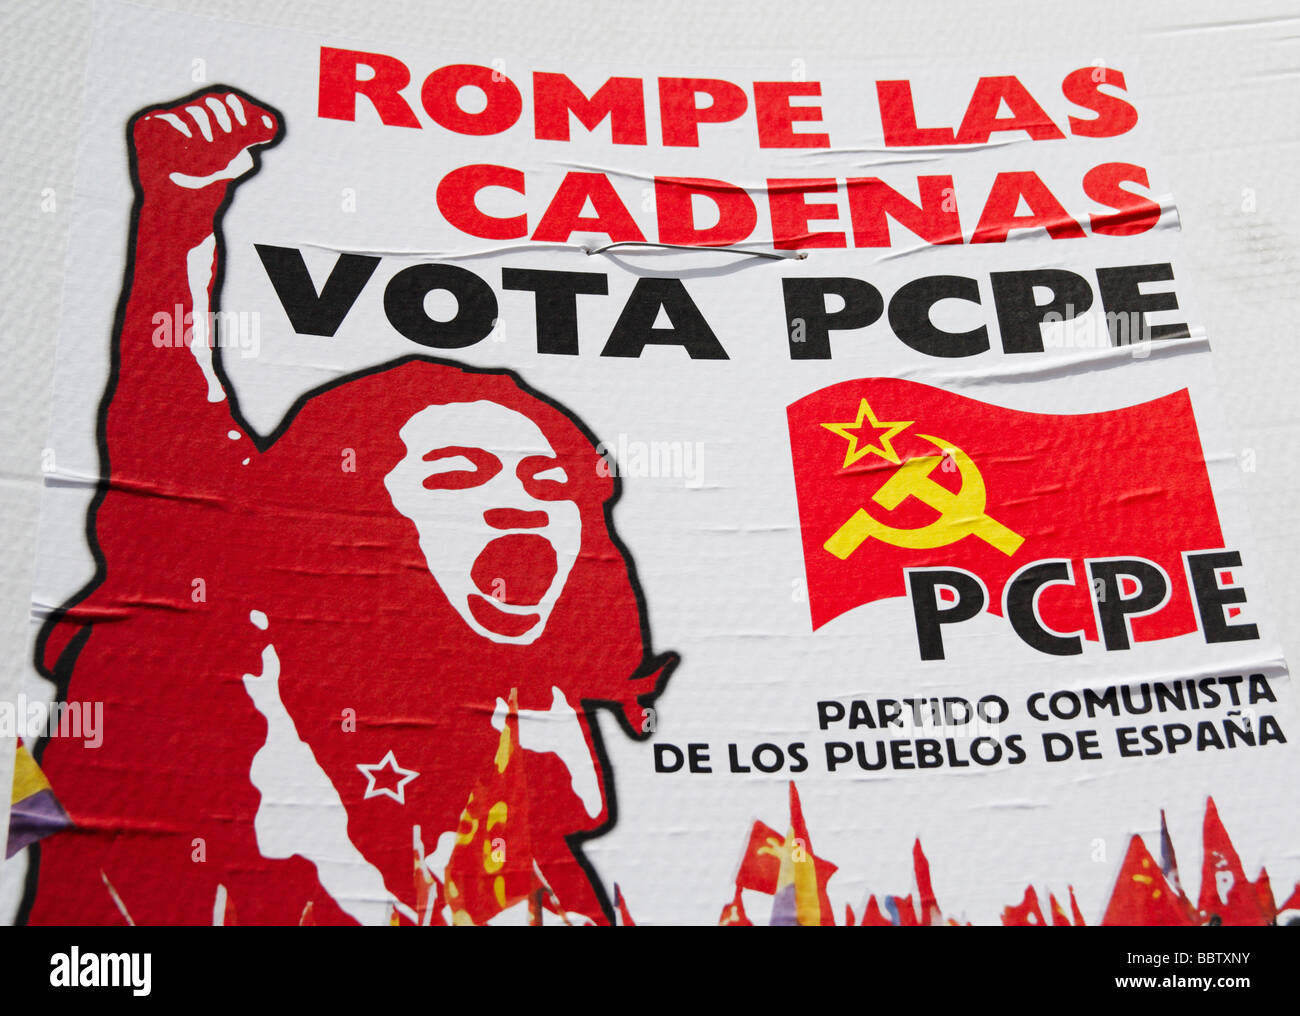 Cartel del partido comunista en España durante las elecciones Foto de stock